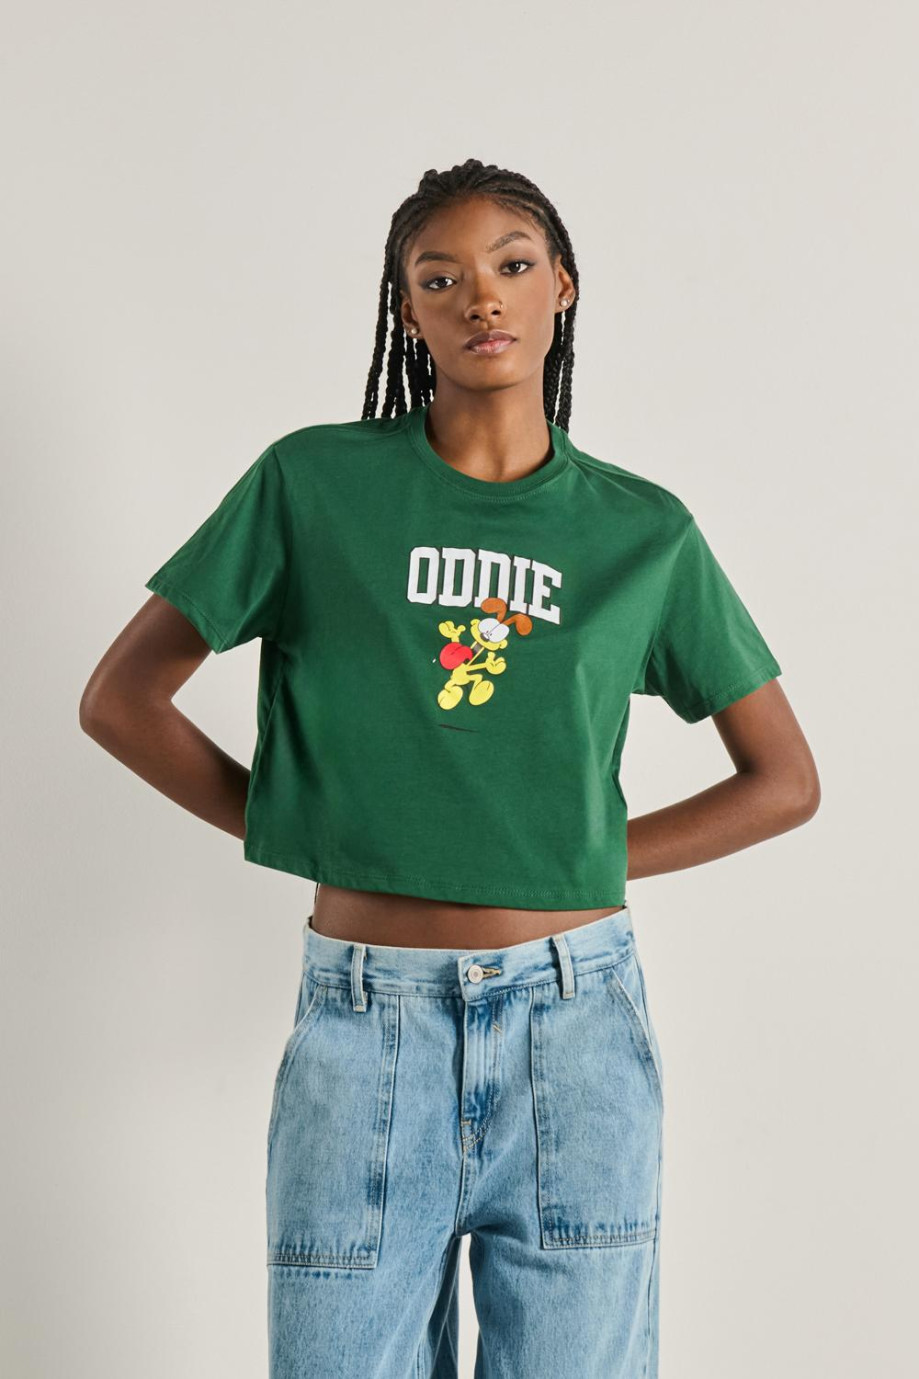 Camiseta verde oscura crop top con diseño de Oddie